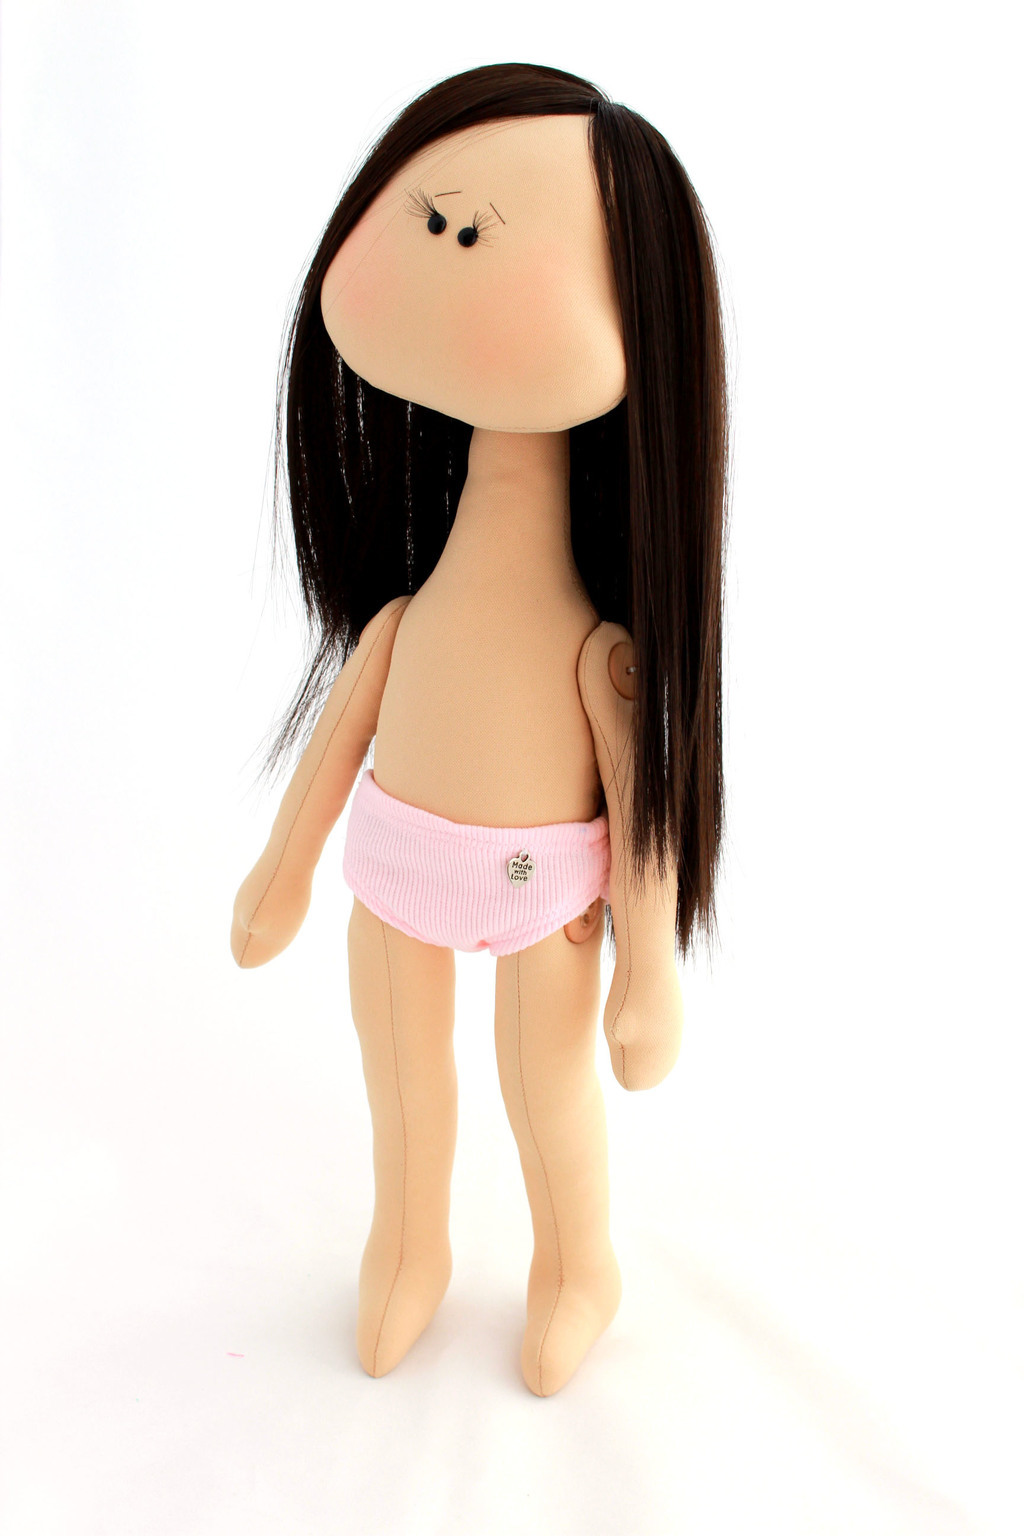 Игровая кукла для девочки со сменной одеждой. Как сшить куклу своими руками. | Elma-toys